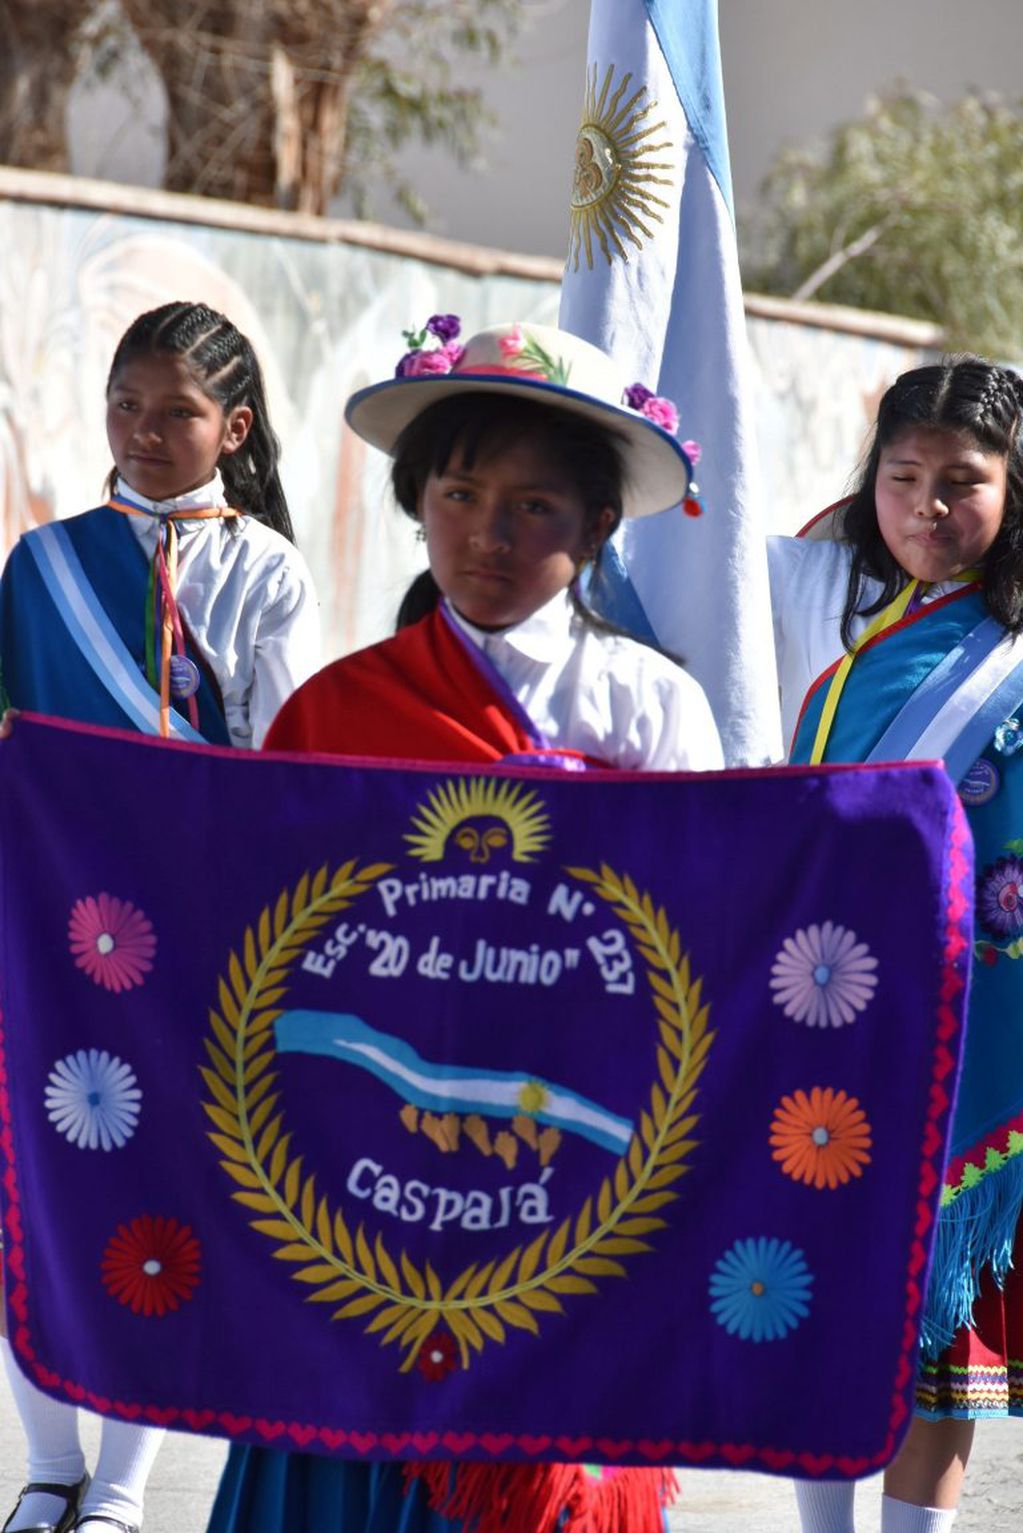 Una delegación de la escuela primaria "20 de Junio" de Caspalá participó de los actos con motivo del Día de la Independencia, en Humahuaca.